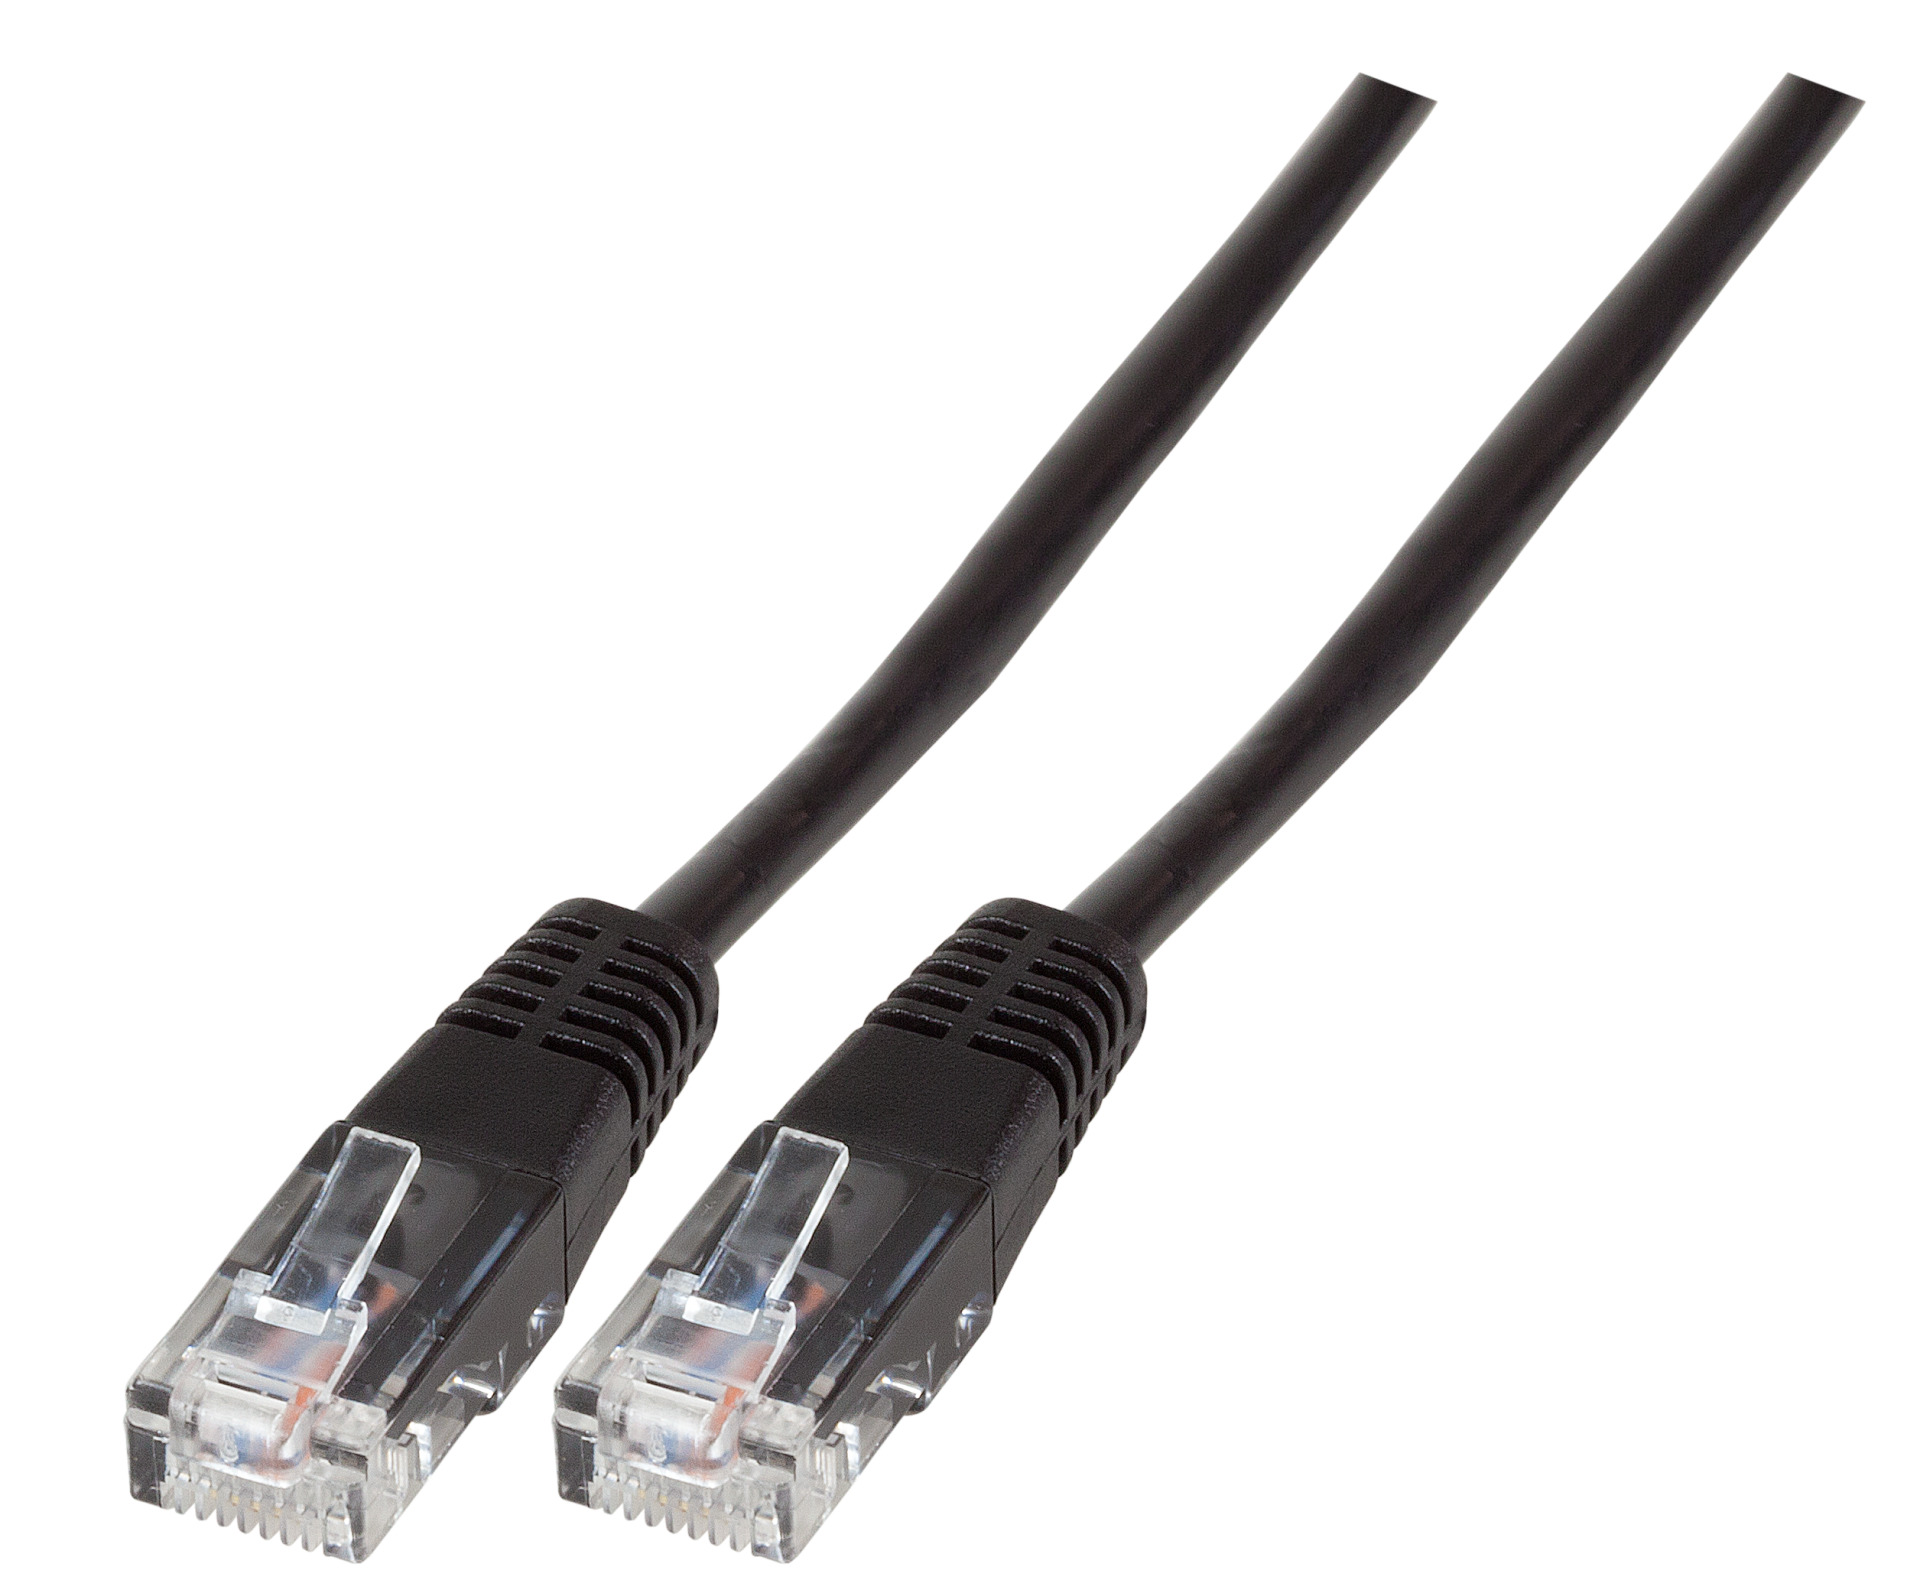 Modular Cable RJ45 (8/4) - RJ45 (8/4), Moulded, Black, 3 m